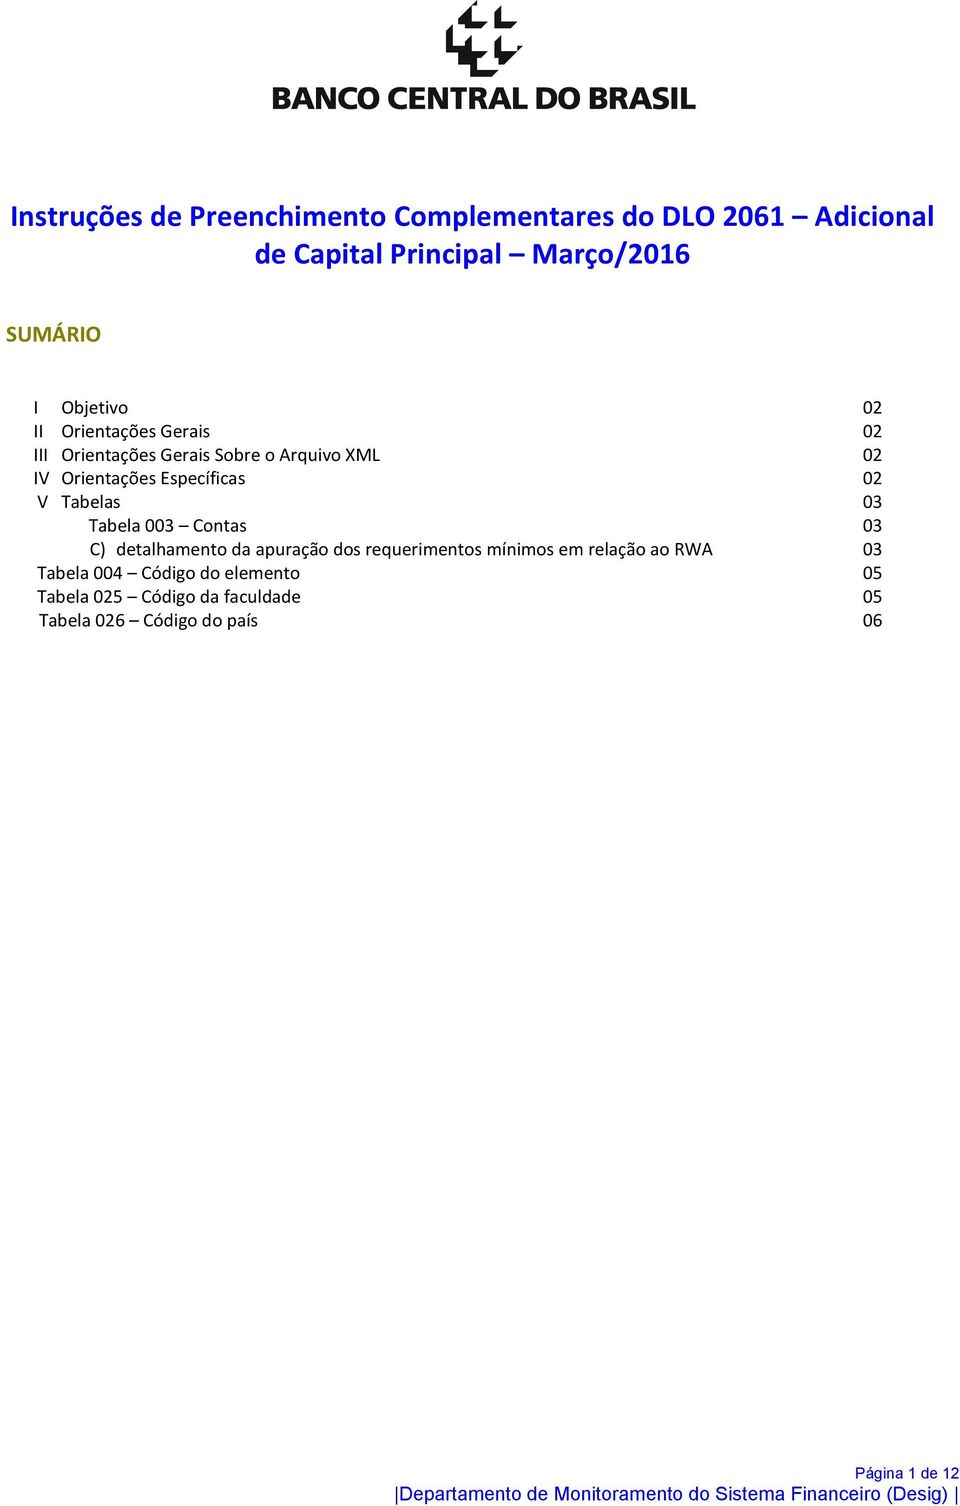 02 V Tabelas 03 Tabela 003 Contas 03 C) detalhamento da apuração dos requerimentos mínimos em relação ao RWA